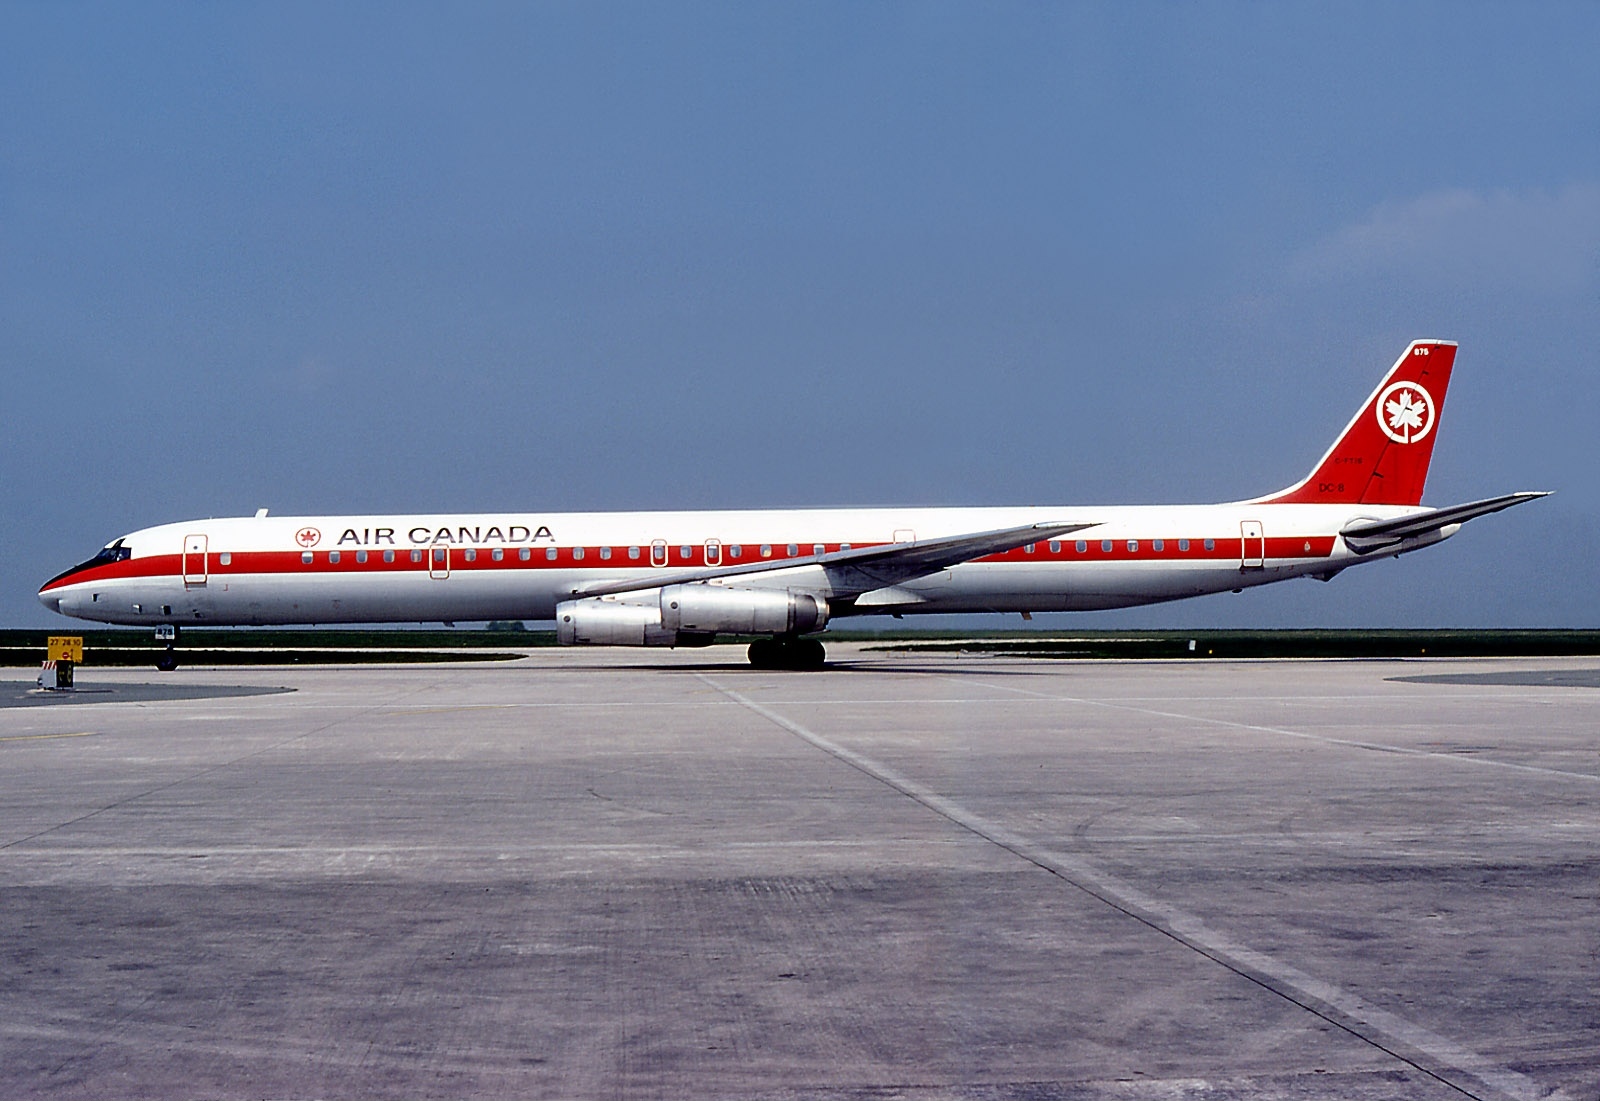 Douglas_DC-8-63(F)_(Air_Canada)_AN062643